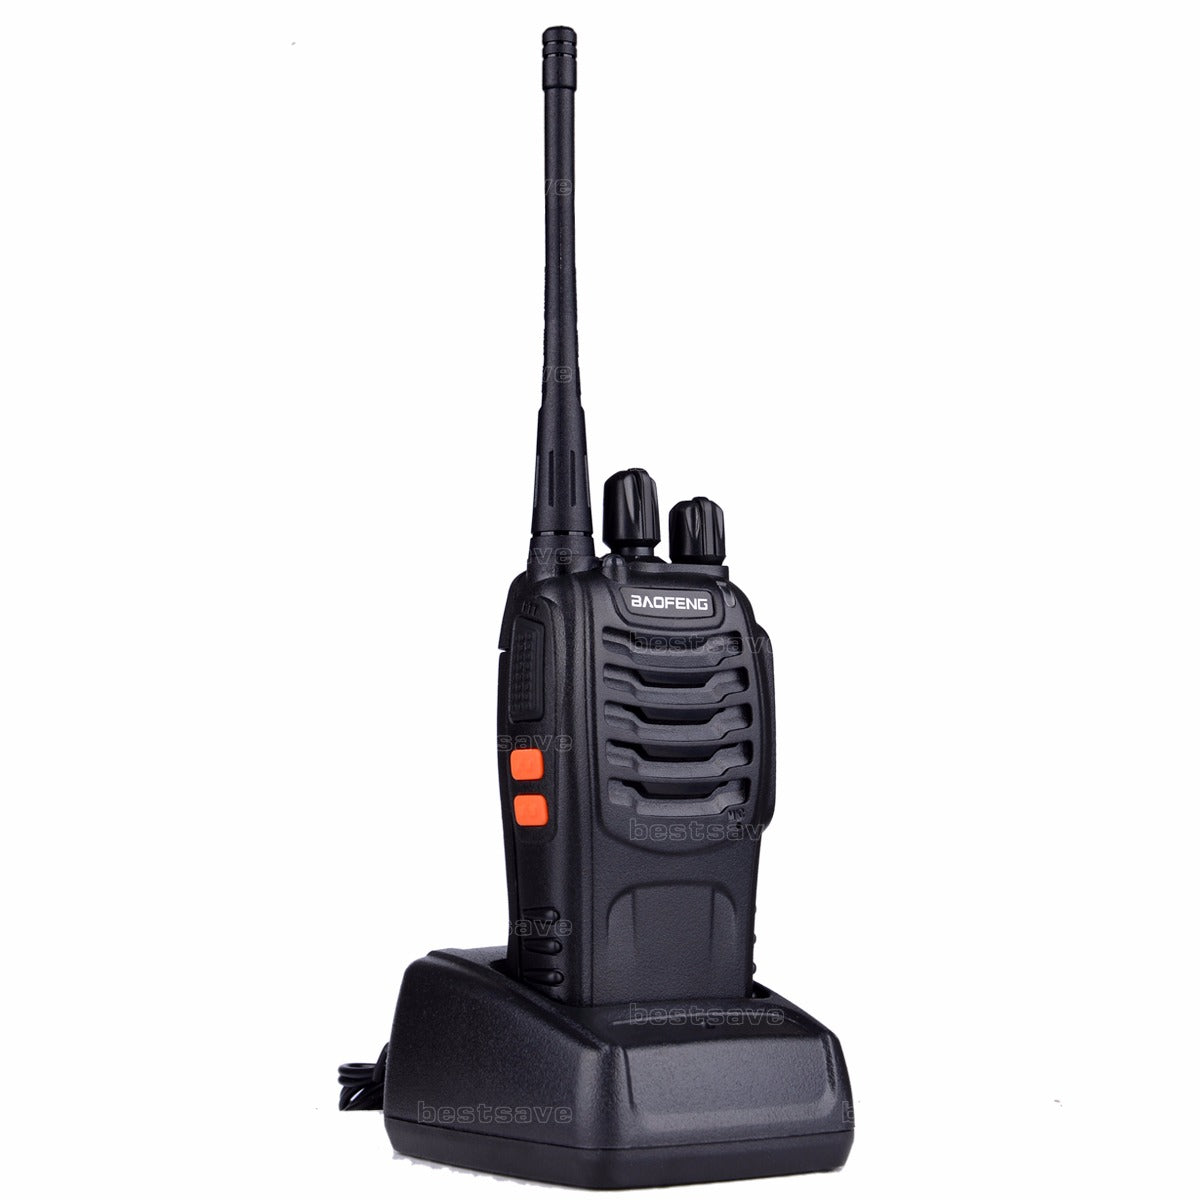 Radio Intercomuniocador 16 Canales Baofeng